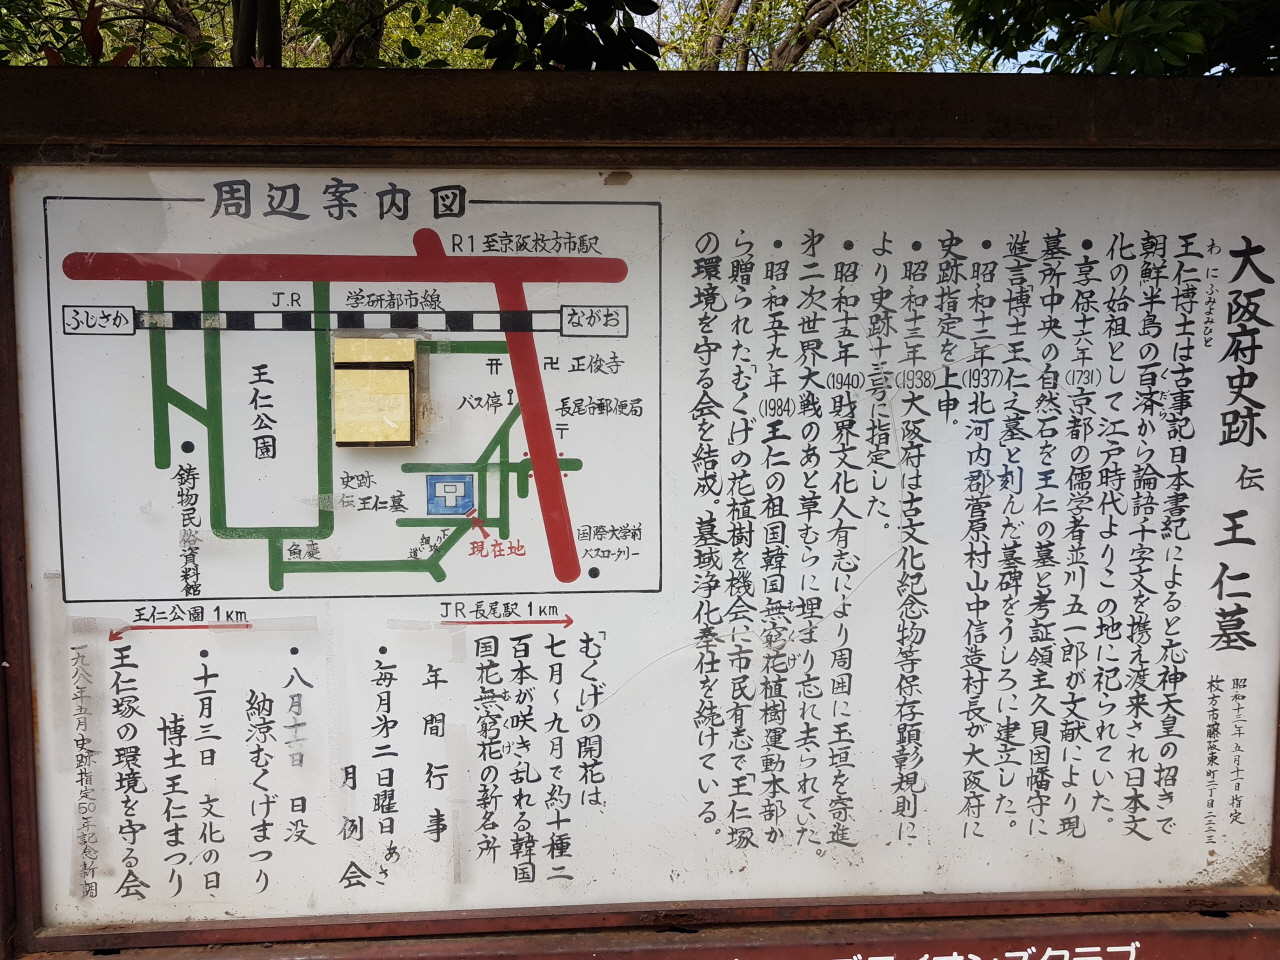 일본 히라카타시 왕인묘 안내도. 왕인공원까지 가는 길도 자세히 안내되어 있다.